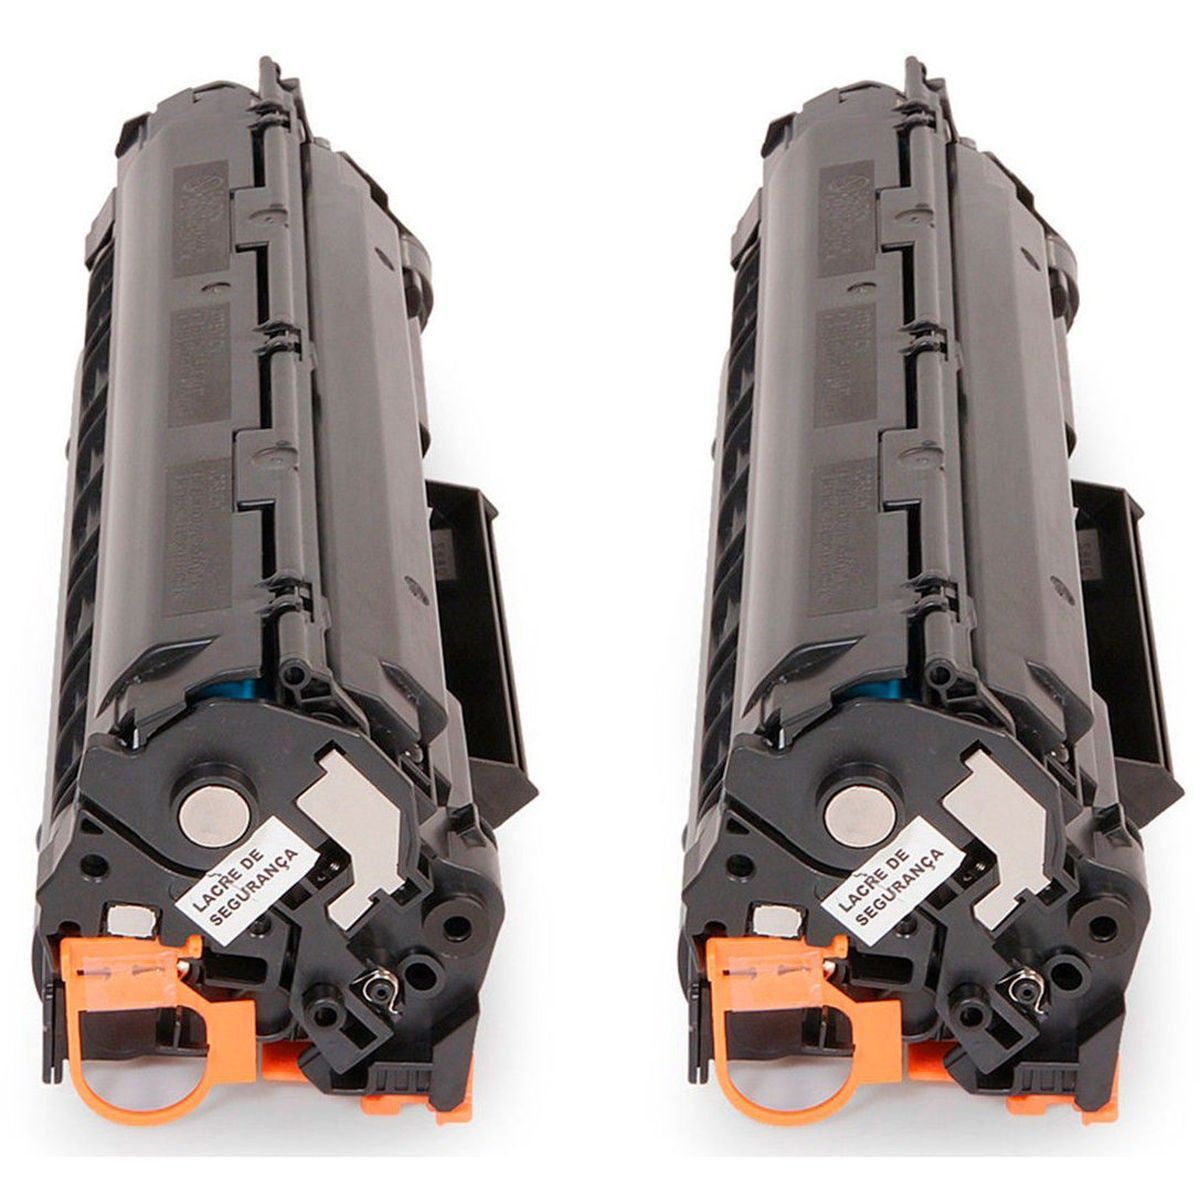 Kit 2x Toner Compatível para HP CE285A 285 para M1130 M1132 M1210 M1212 M1212nf P1102w 1102w 1130 1132 Preto 1.600